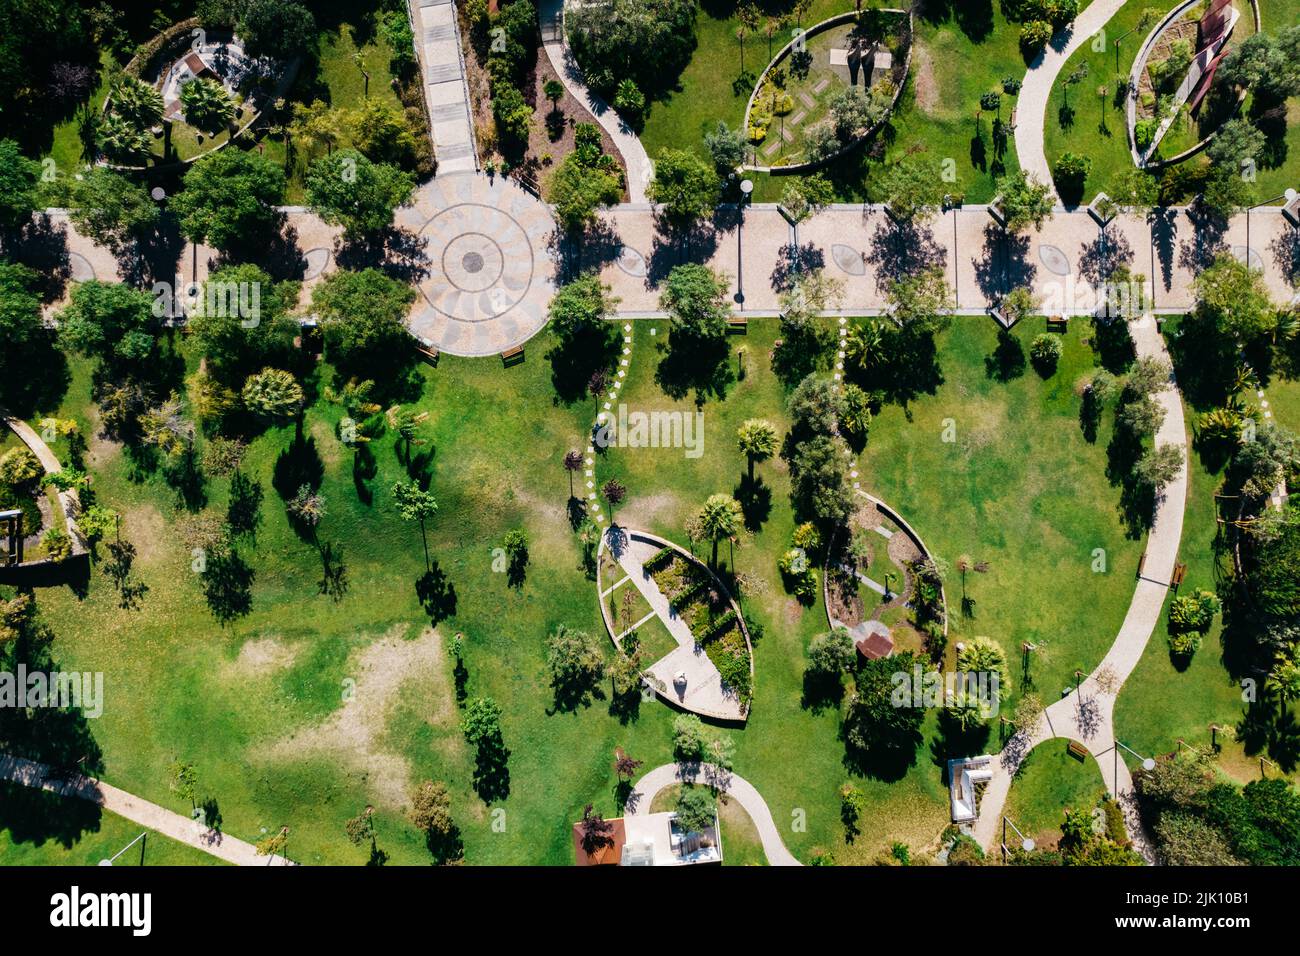 Lisboa, Portugal - 29 de julio de 2022: Vista aérea del Parque dos Poetas en Oerias, traducida al Parque del Poeta Foto de stock